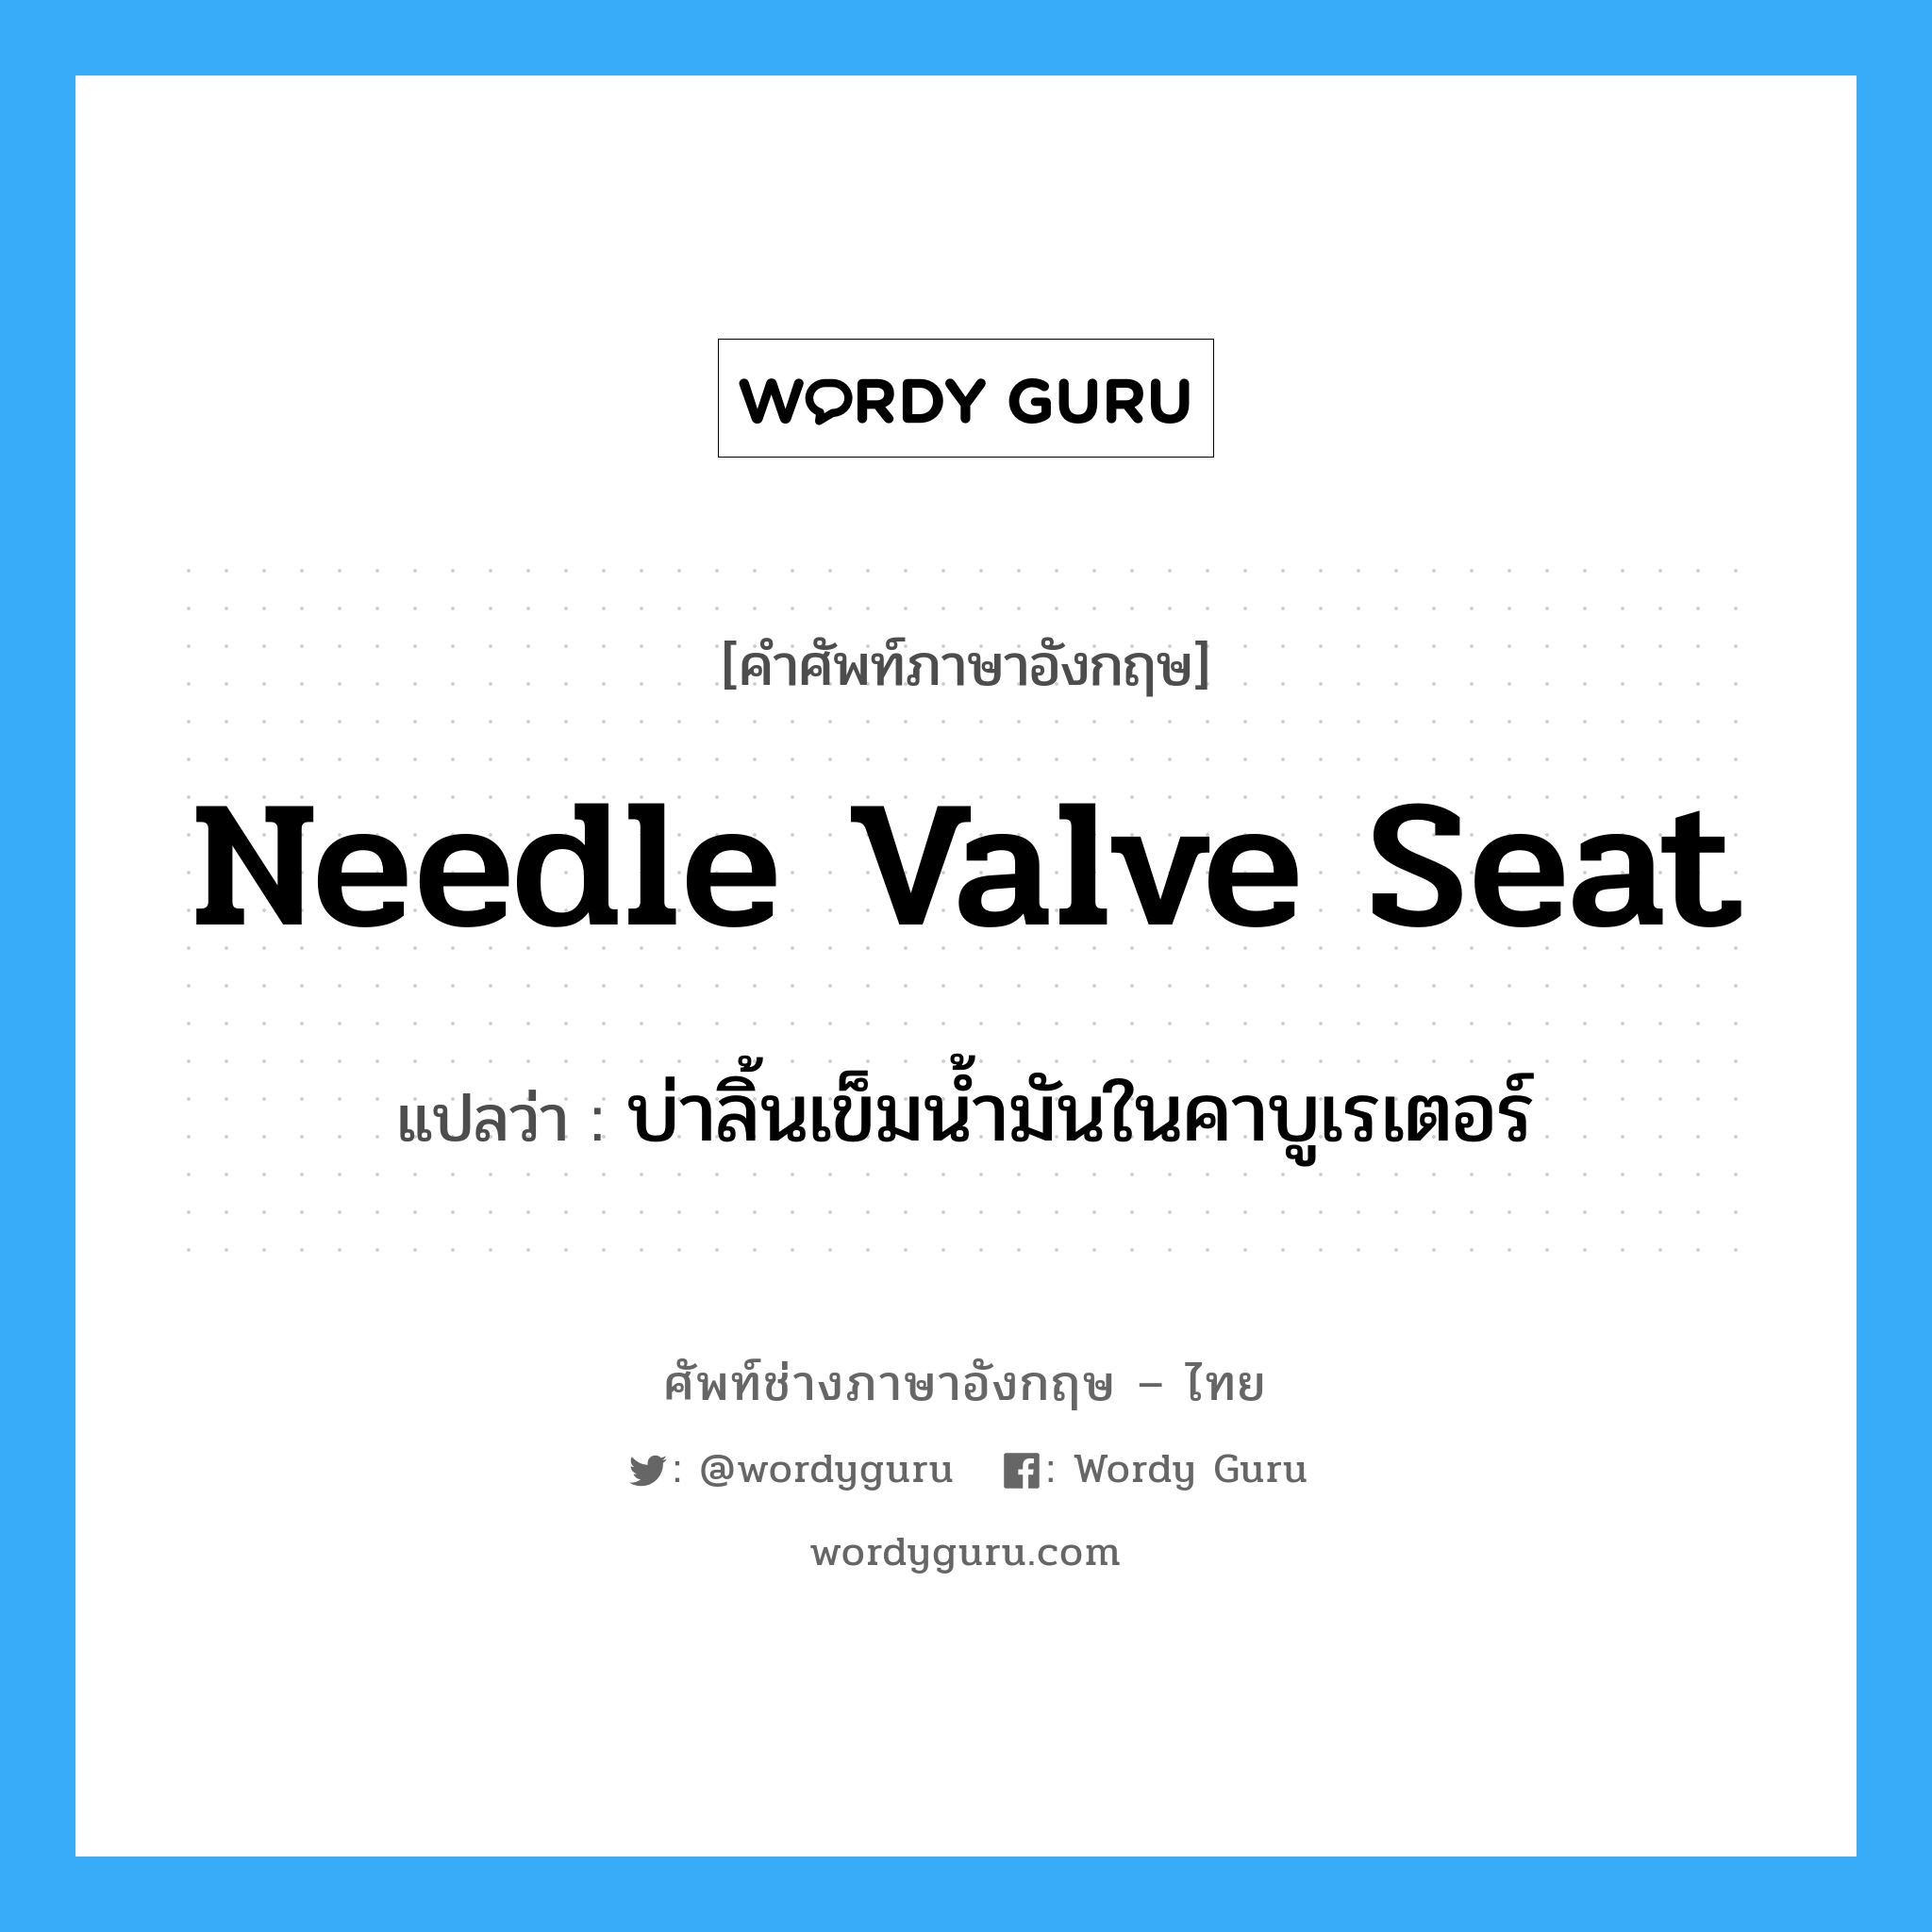 บ่าลิ้นเข็มน้ำมันในคาบูเรเตอร์ ภาษาอังกฤษ?, คำศัพท์ช่างภาษาอังกฤษ - ไทย บ่าลิ้นเข็มน้ำมันในคาบูเรเตอร์ คำศัพท์ภาษาอังกฤษ บ่าลิ้นเข็มน้ำมันในคาบูเรเตอร์ แปลว่า needle valve seat